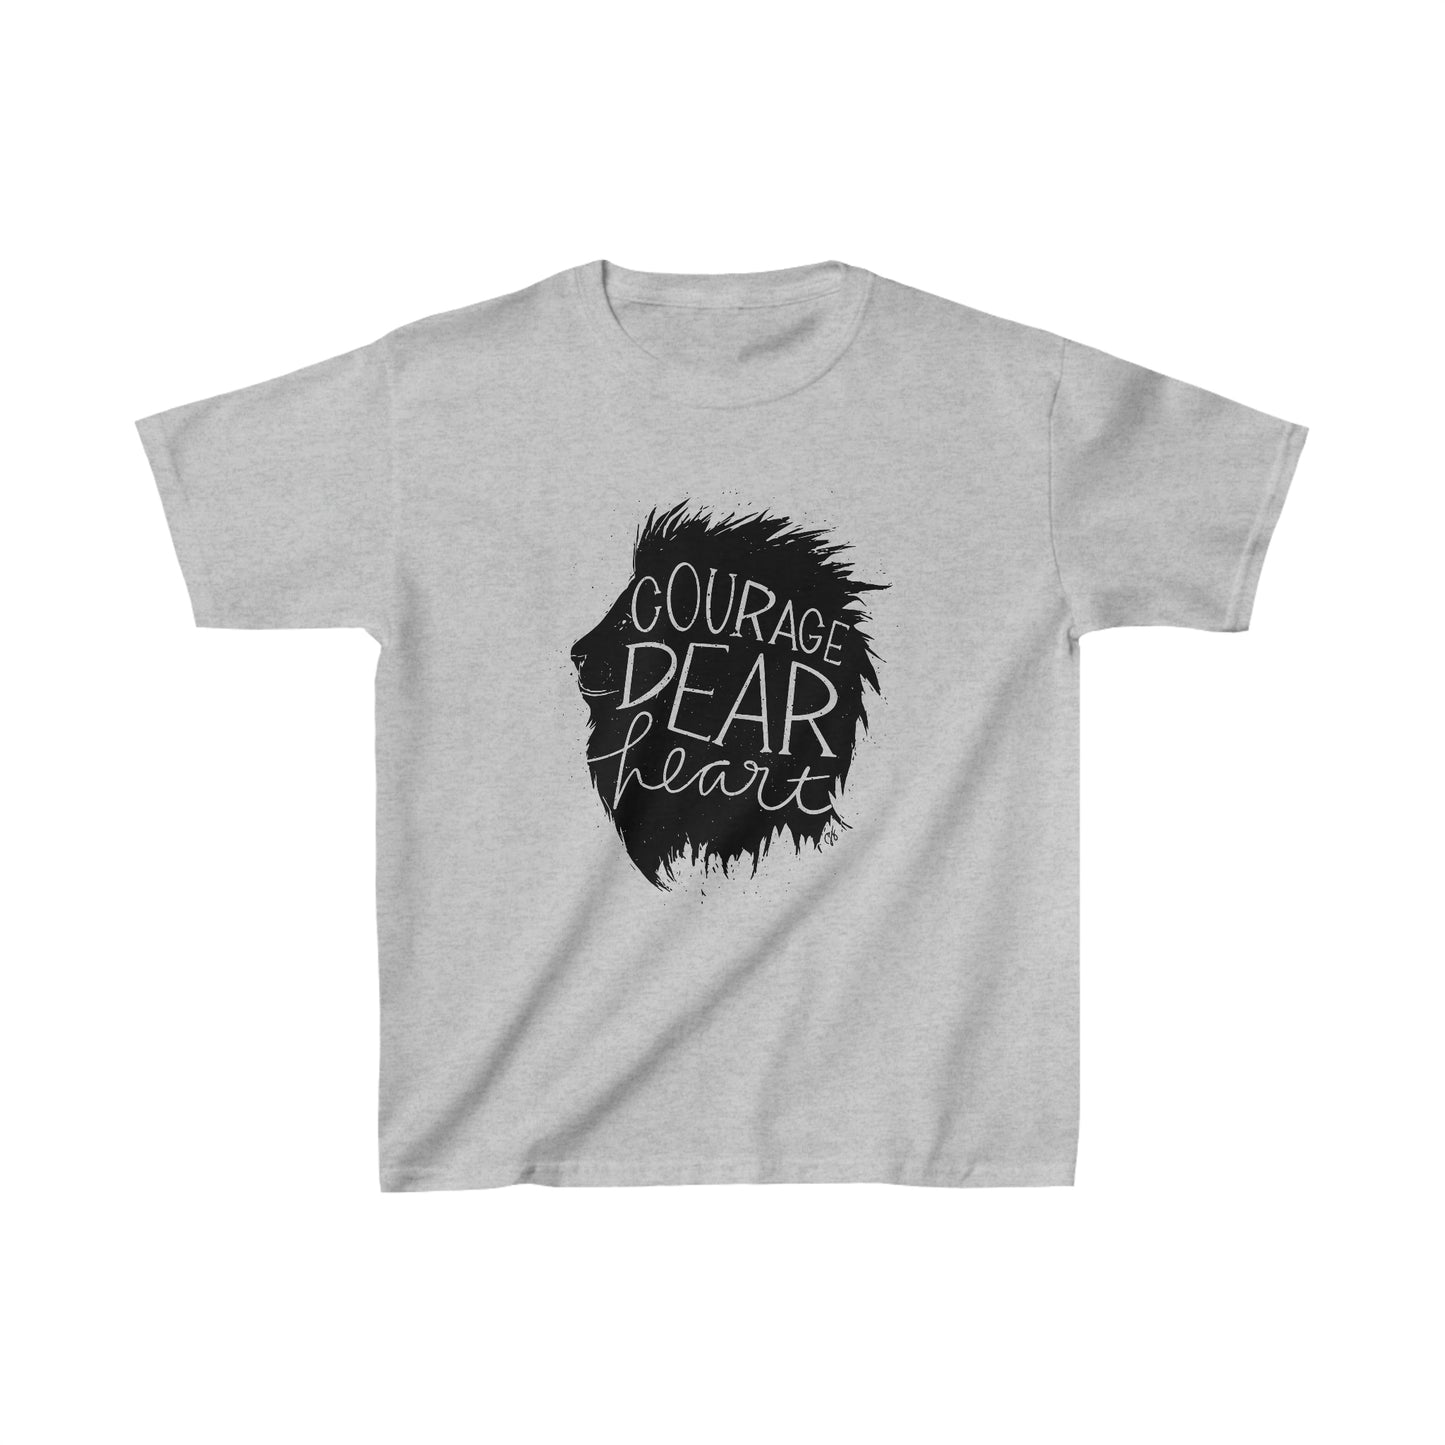 Courage Dear Heart - Lion - Kids T-shirt